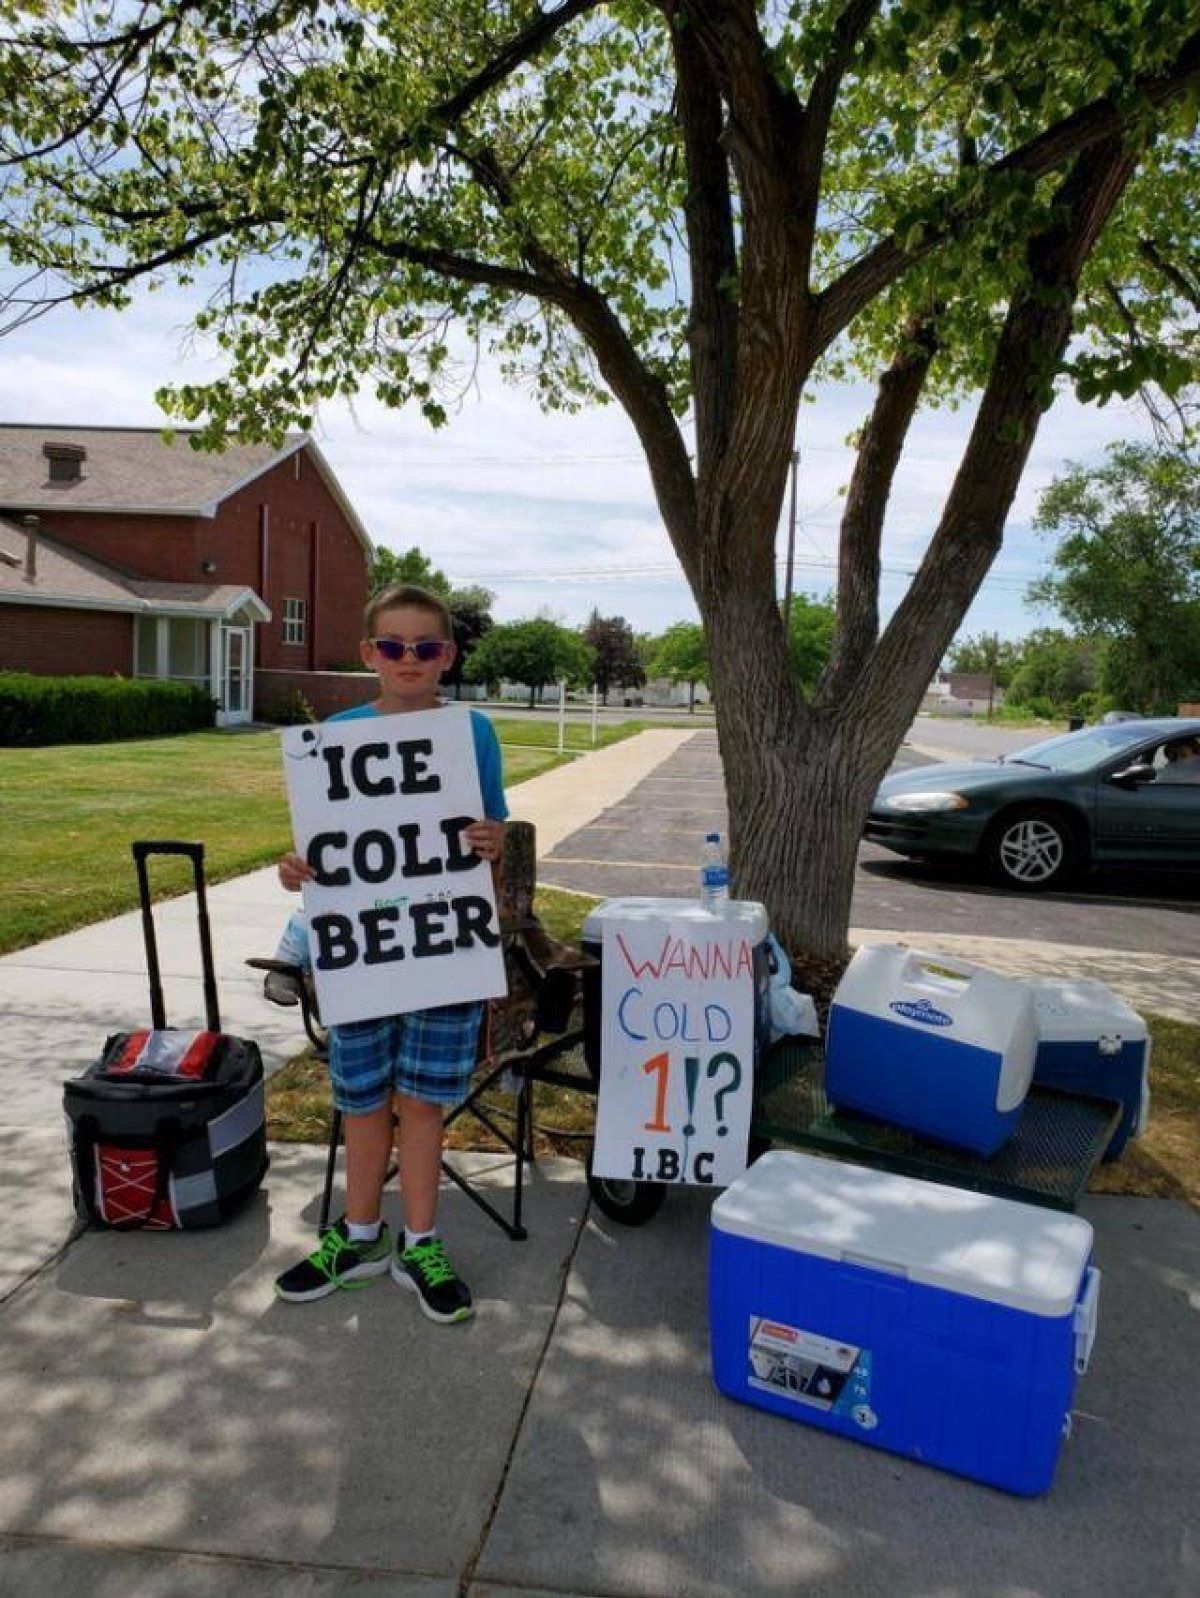 Хлопчик продавав пиво на вулиці, чим дуже стурбував сусідів, ним зацікавилася поліція, але як з'ясувалося він нічого не порушив. Підприємцем швидко зацікавилася поліція.